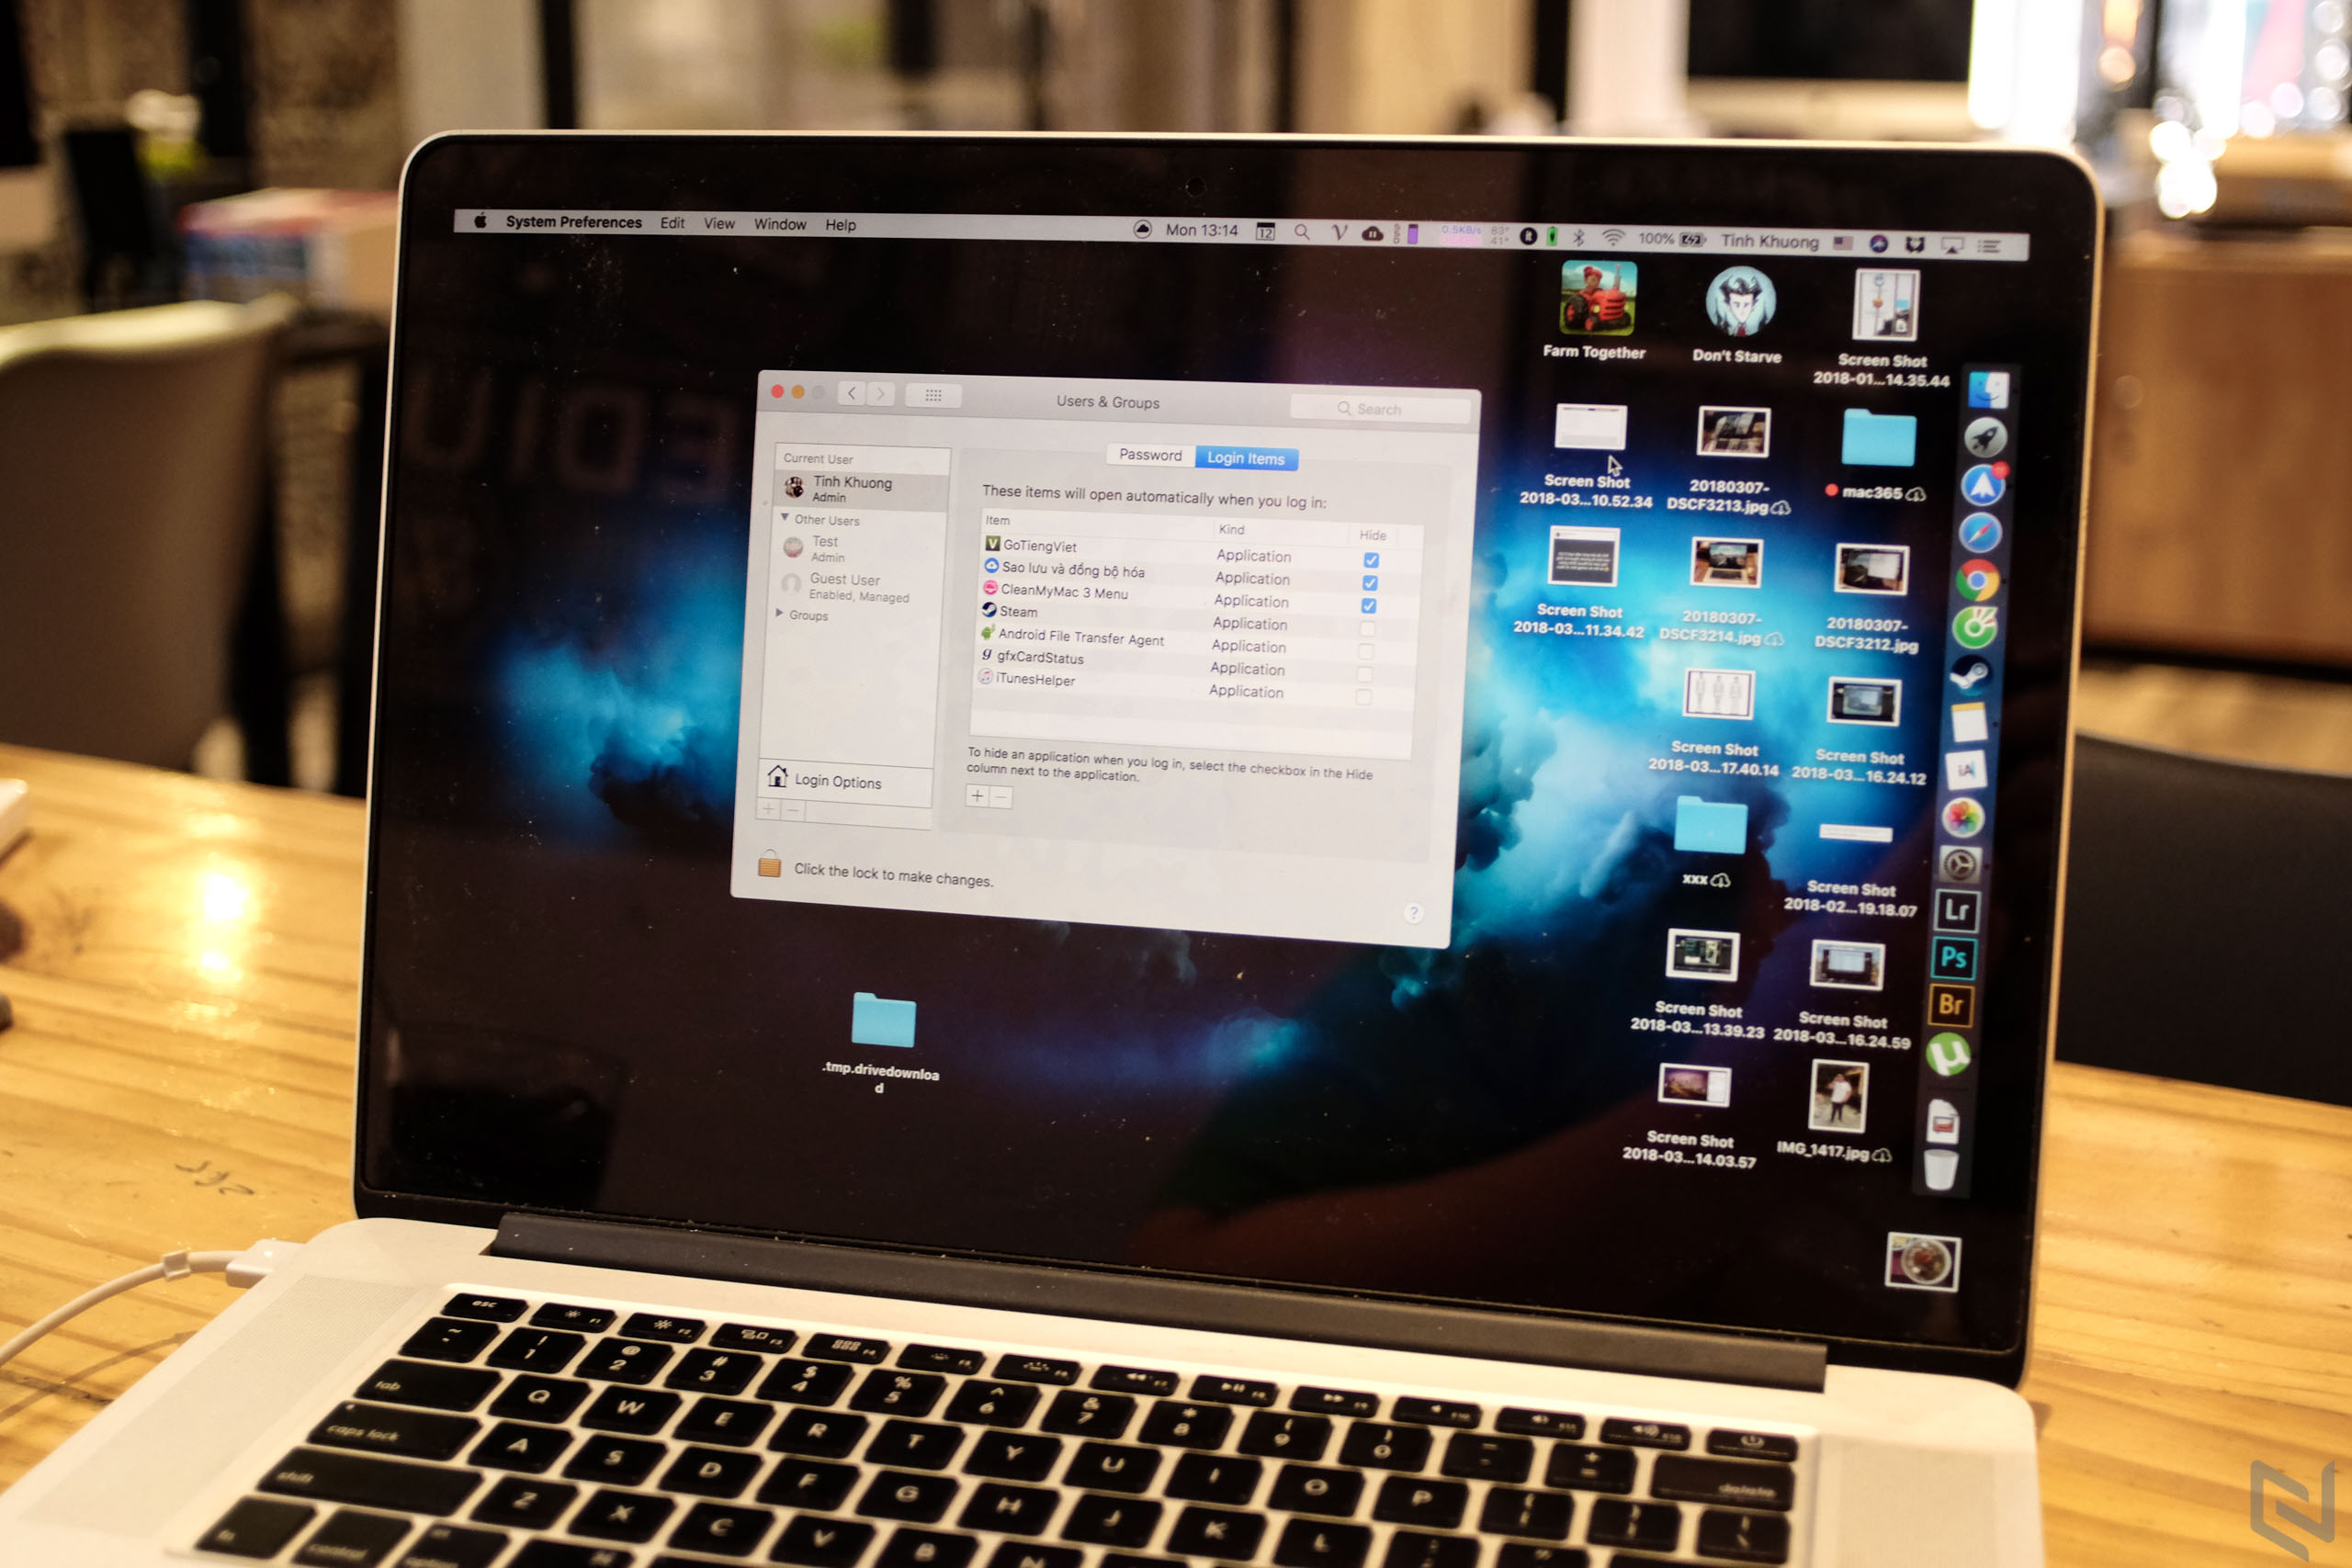 Làm quen Mac – Tắt, tạm hoãn bớt các ứng dụng chạy nền khi vừa mở máy Mac